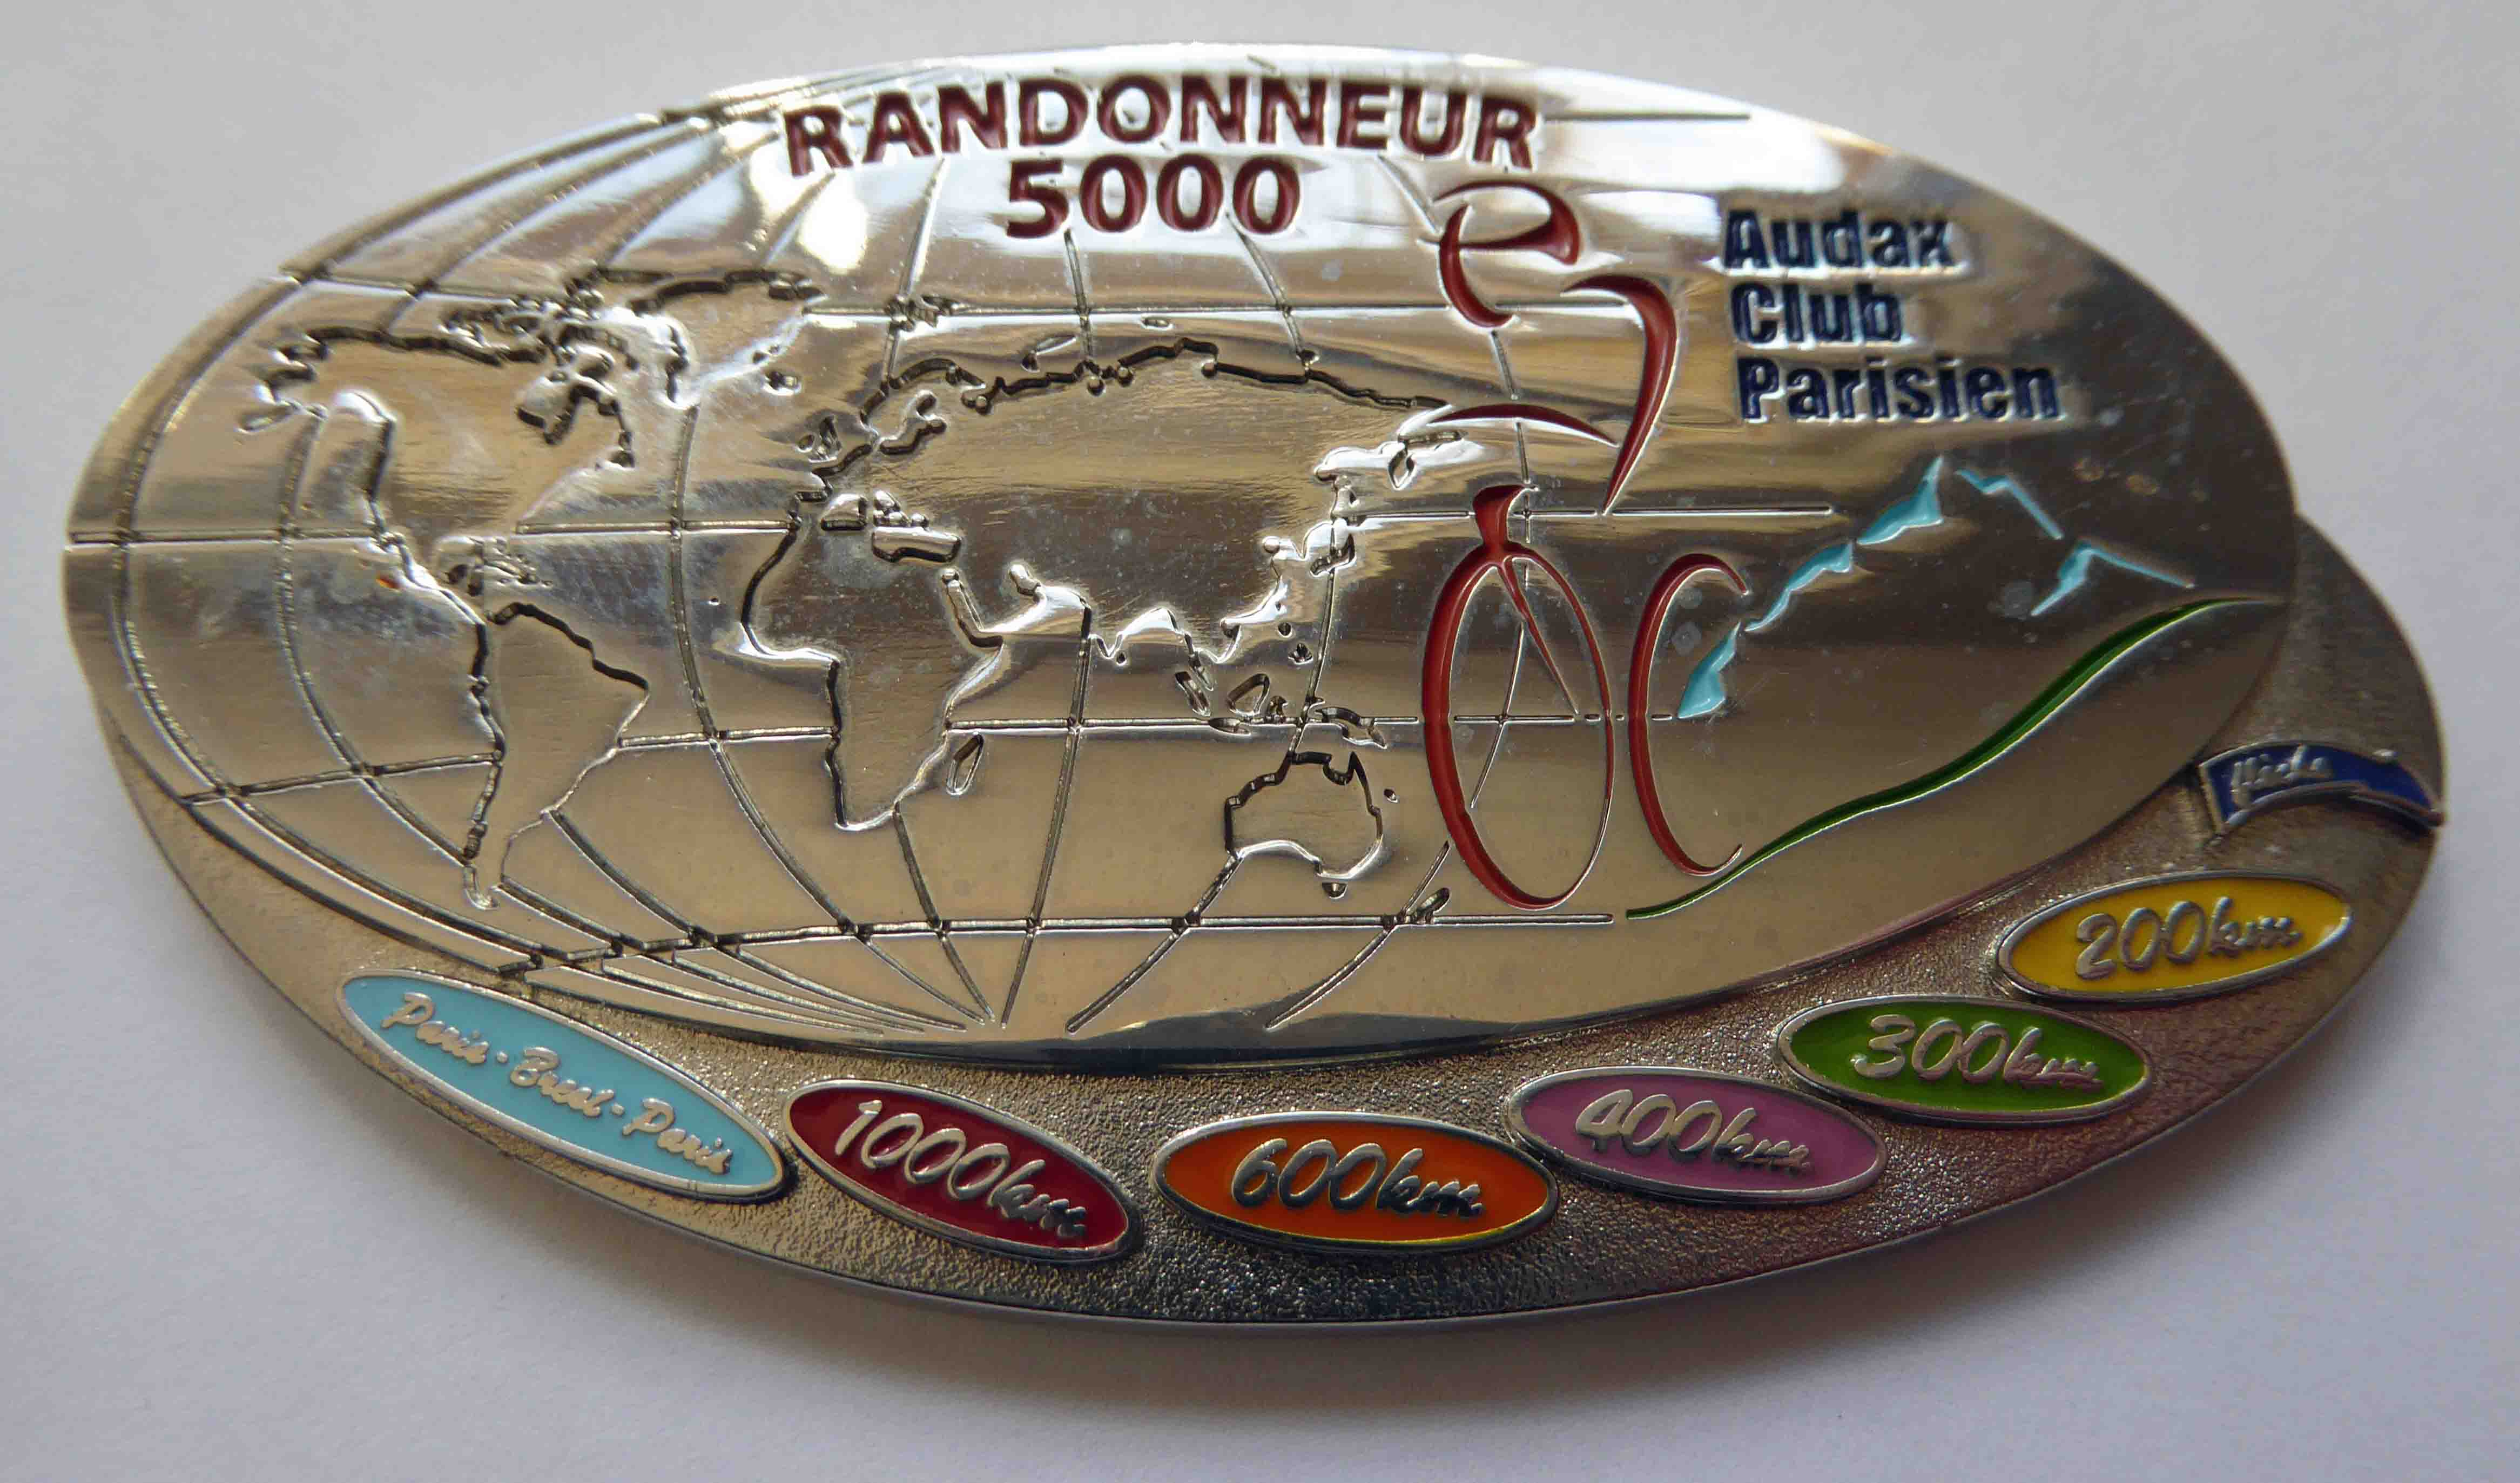 Randonneur 5000 medal